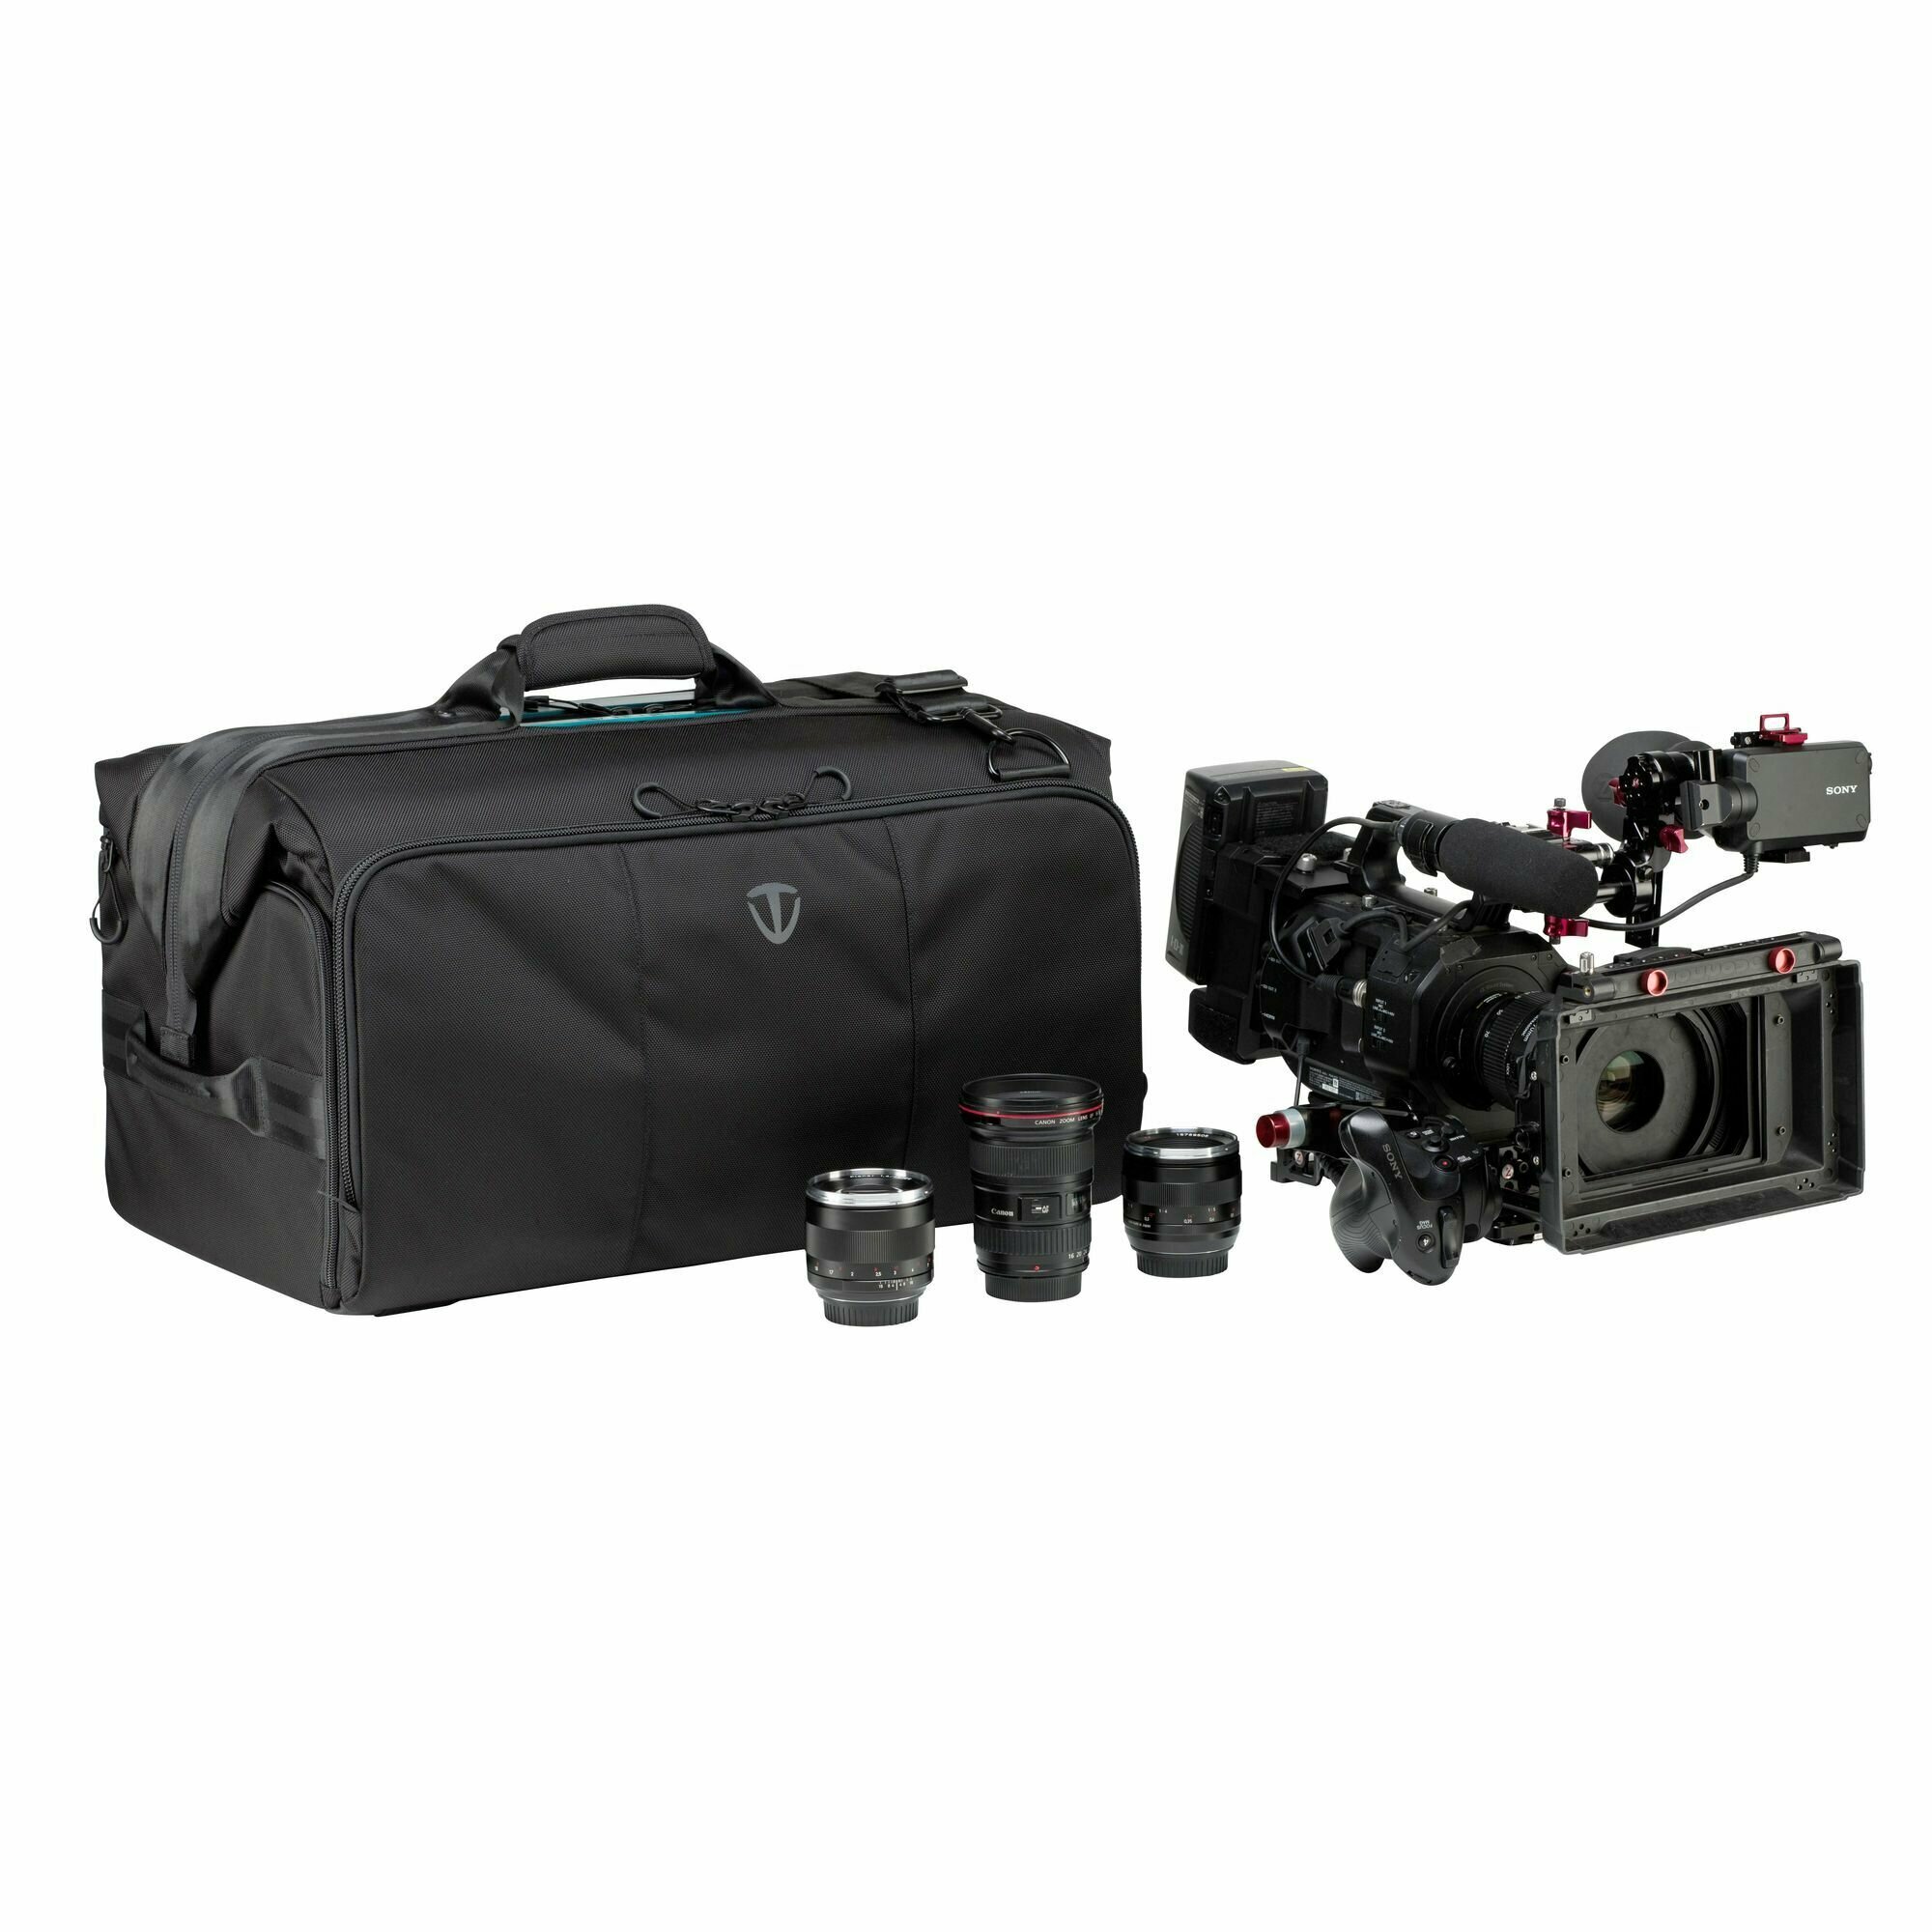 Сумка для камеры, фото и видеотехники Tenba Cineluxe Shoulder Bag 24 (637-504)